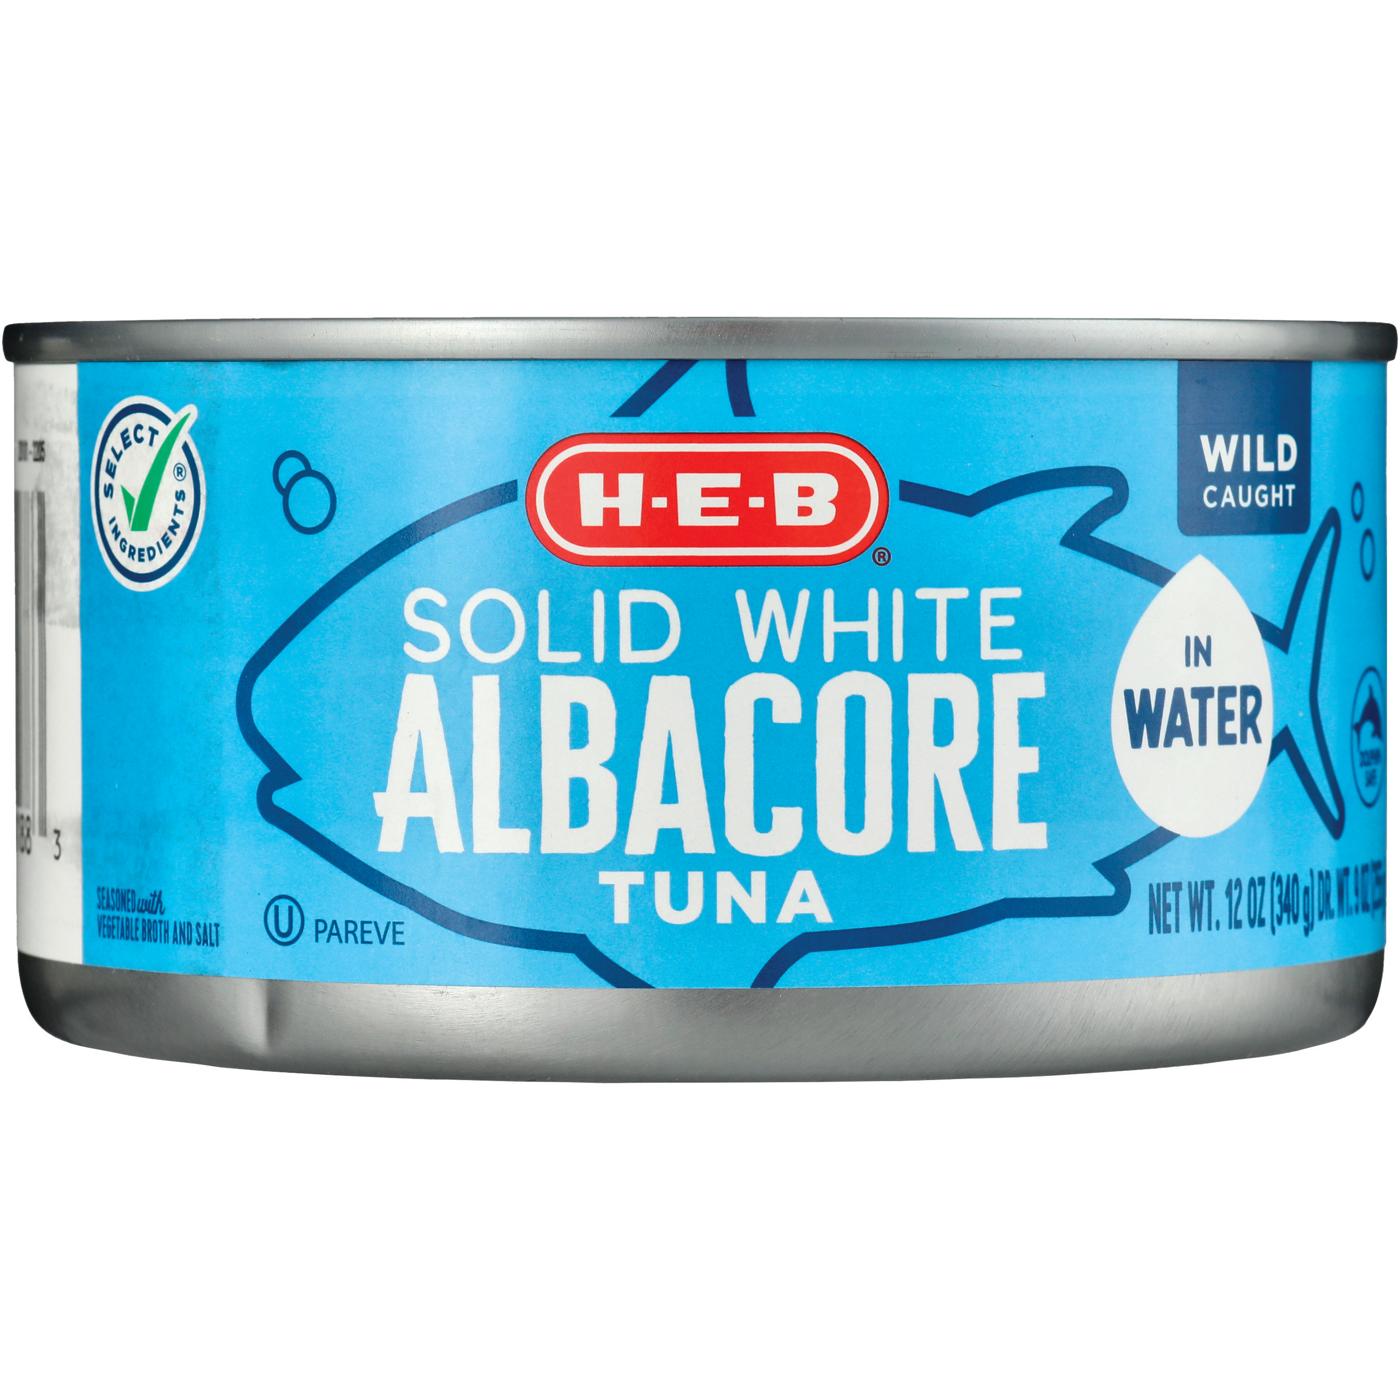 H-E-B Solid White Albacore Tuna in Water; image 2 of 2